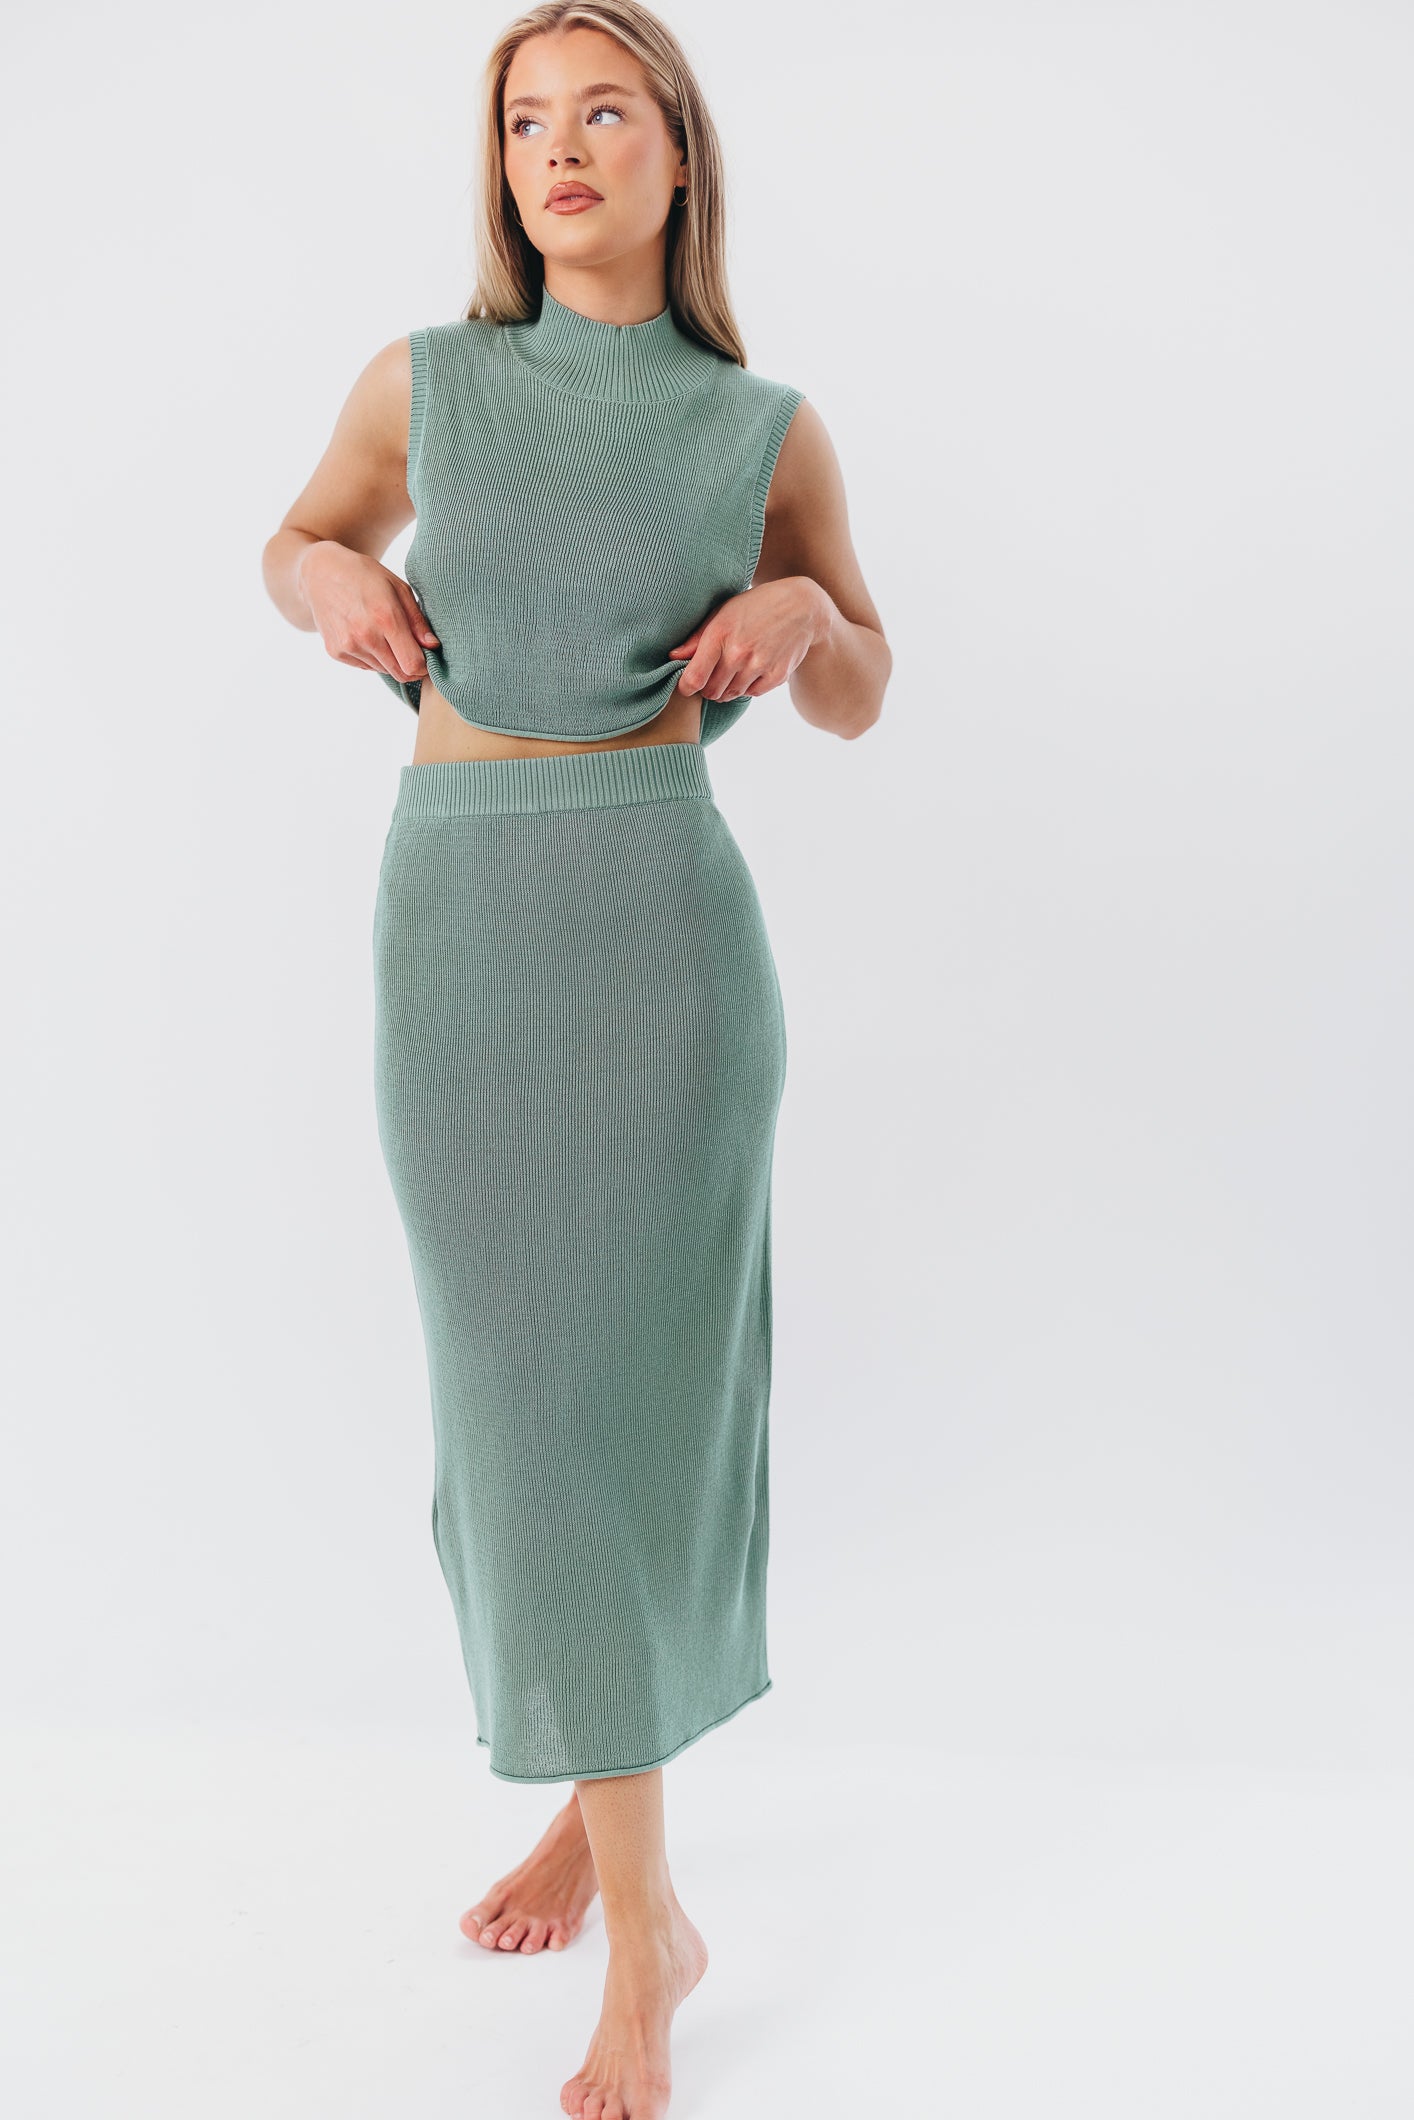 Cassie Knit Mockneck Top in Teal Green